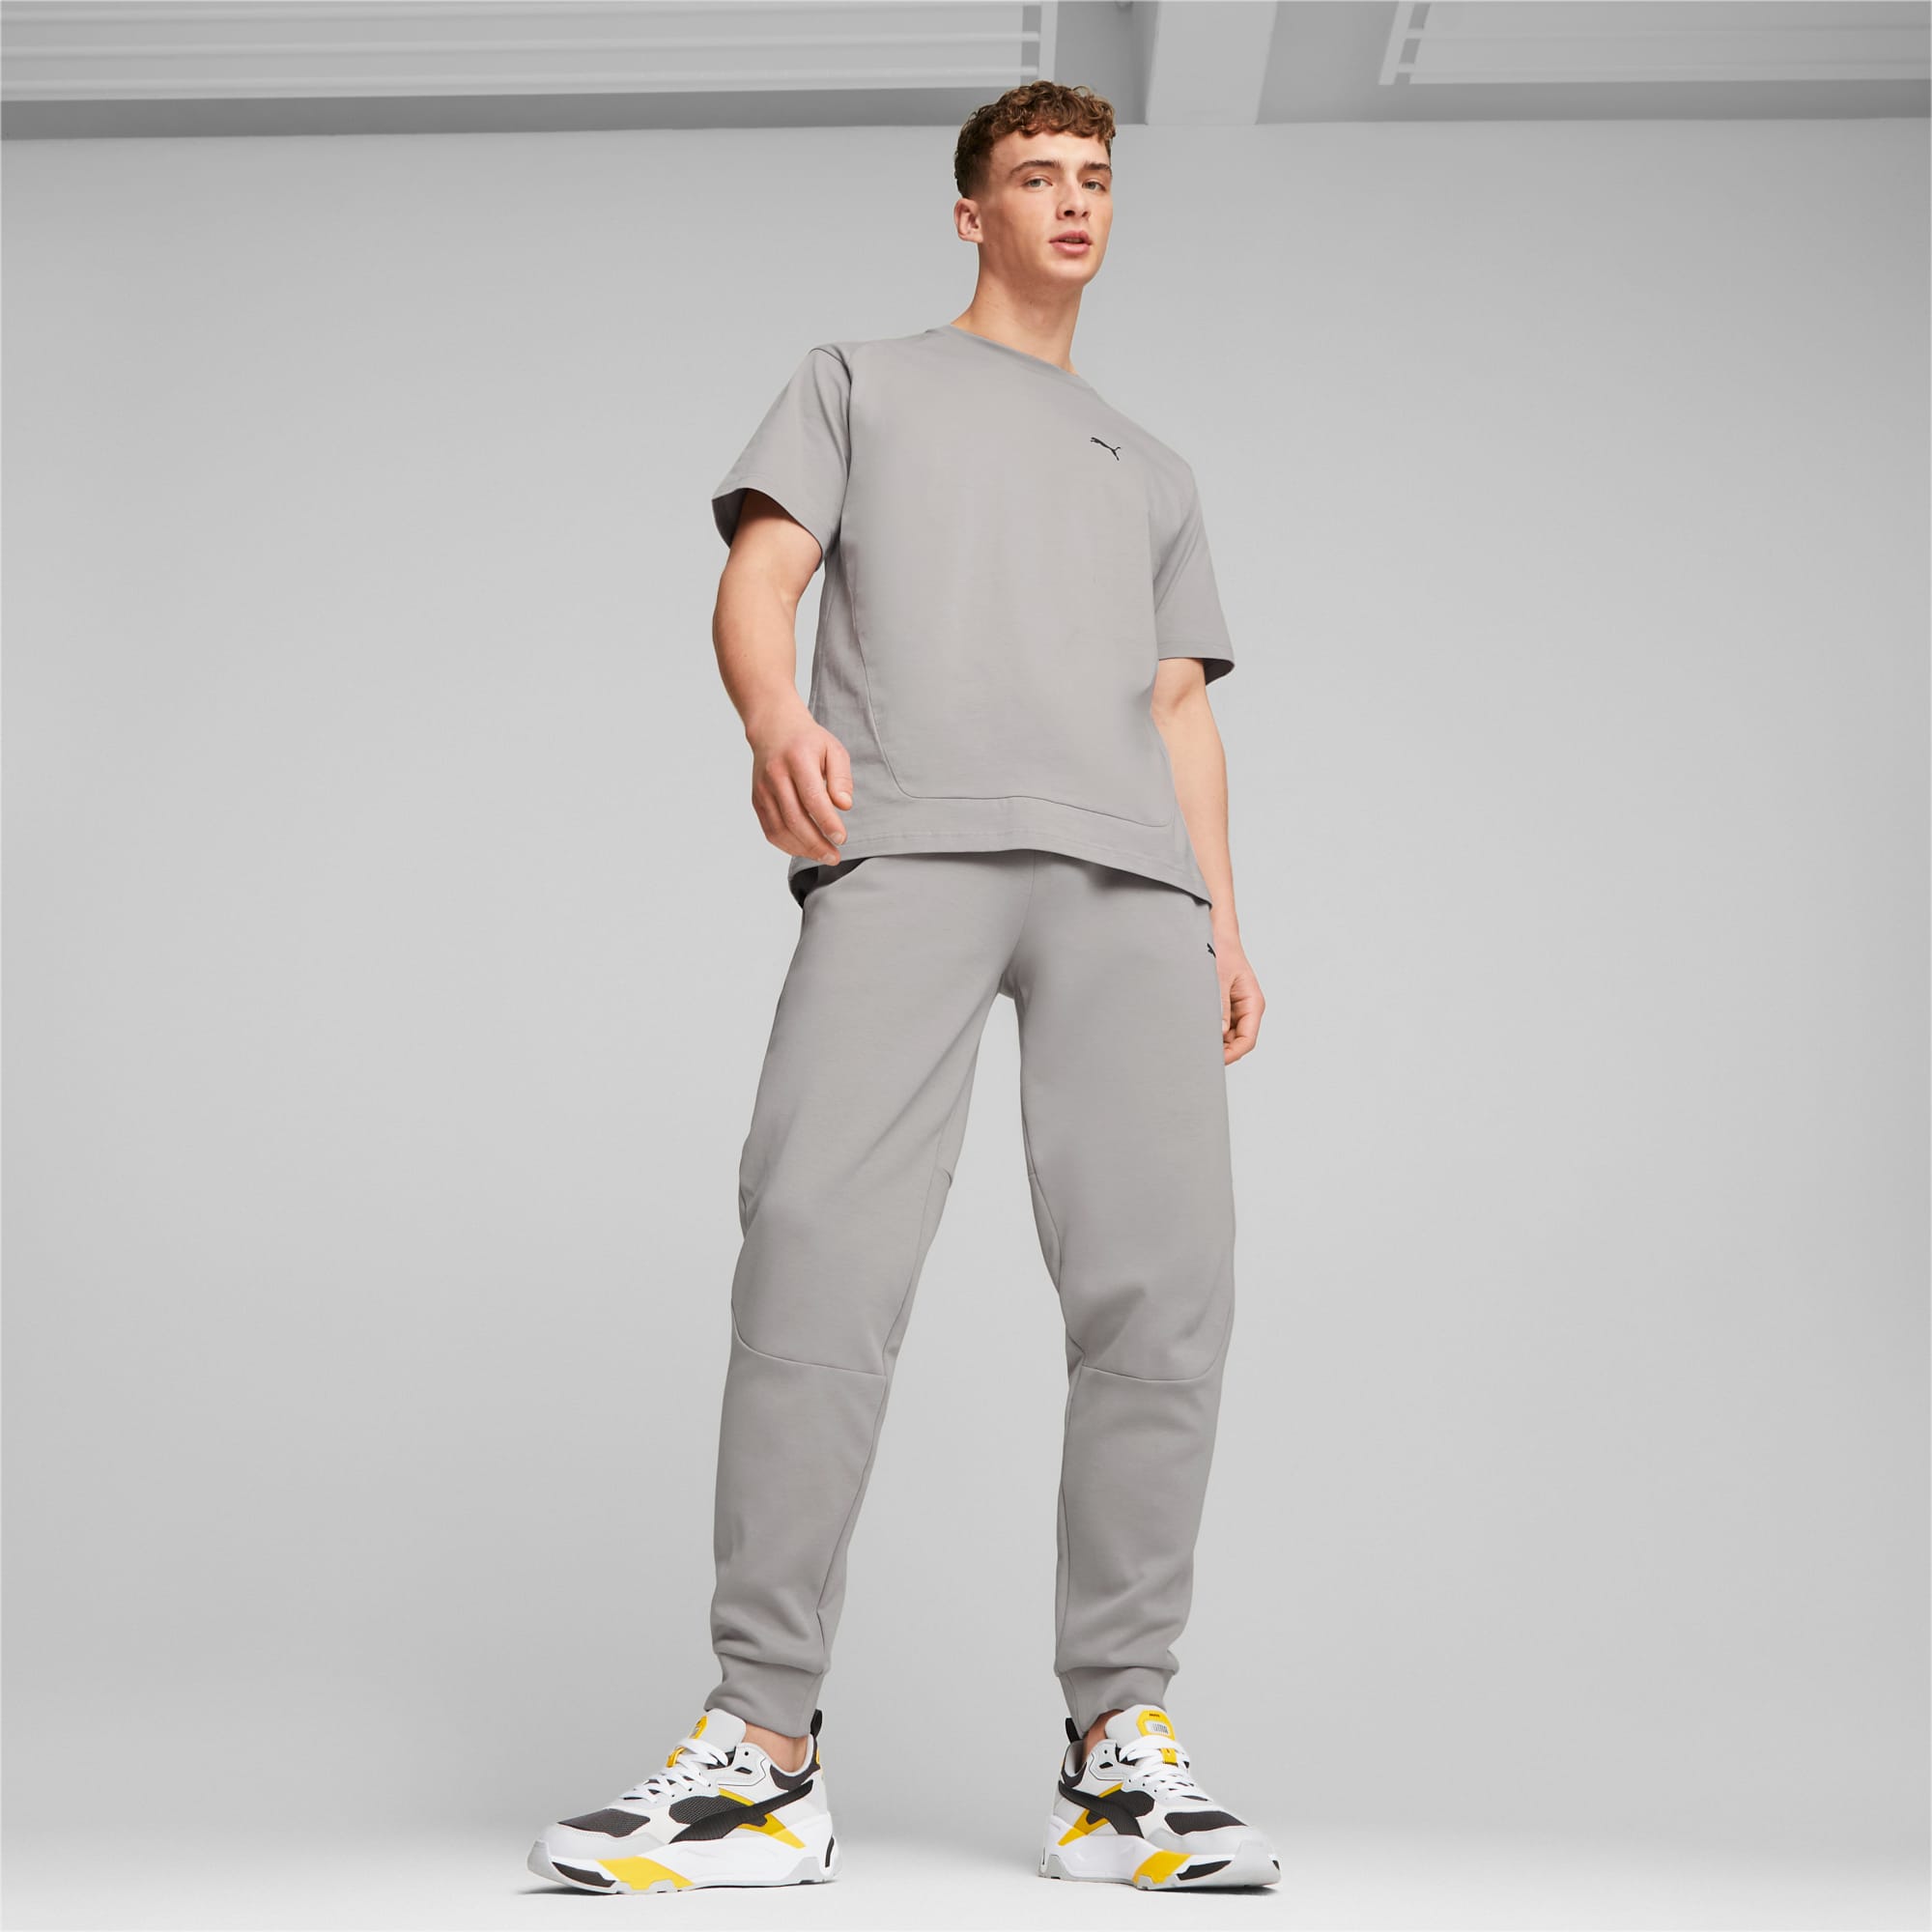 PUMA Rad/Cal Pants Men, Concrete Grey